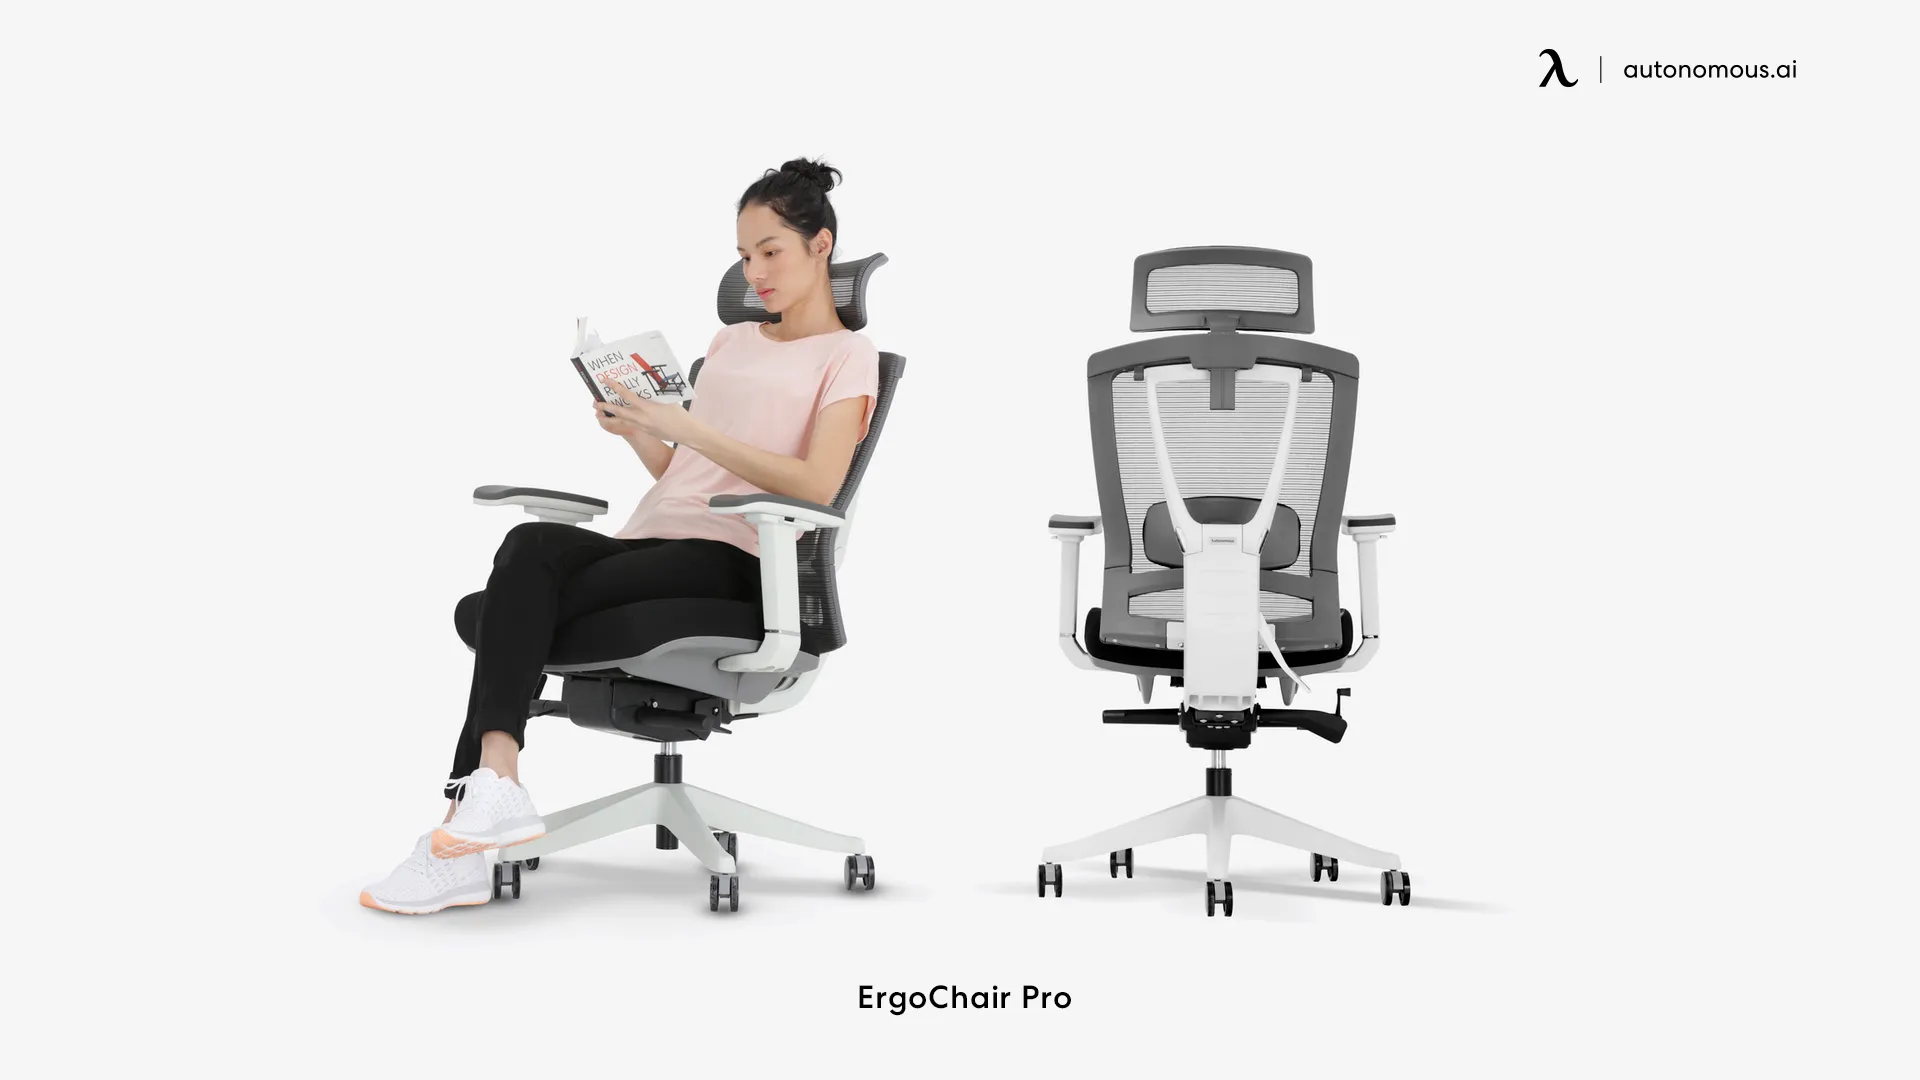 ErgoChair Pro adjustable height desk chair